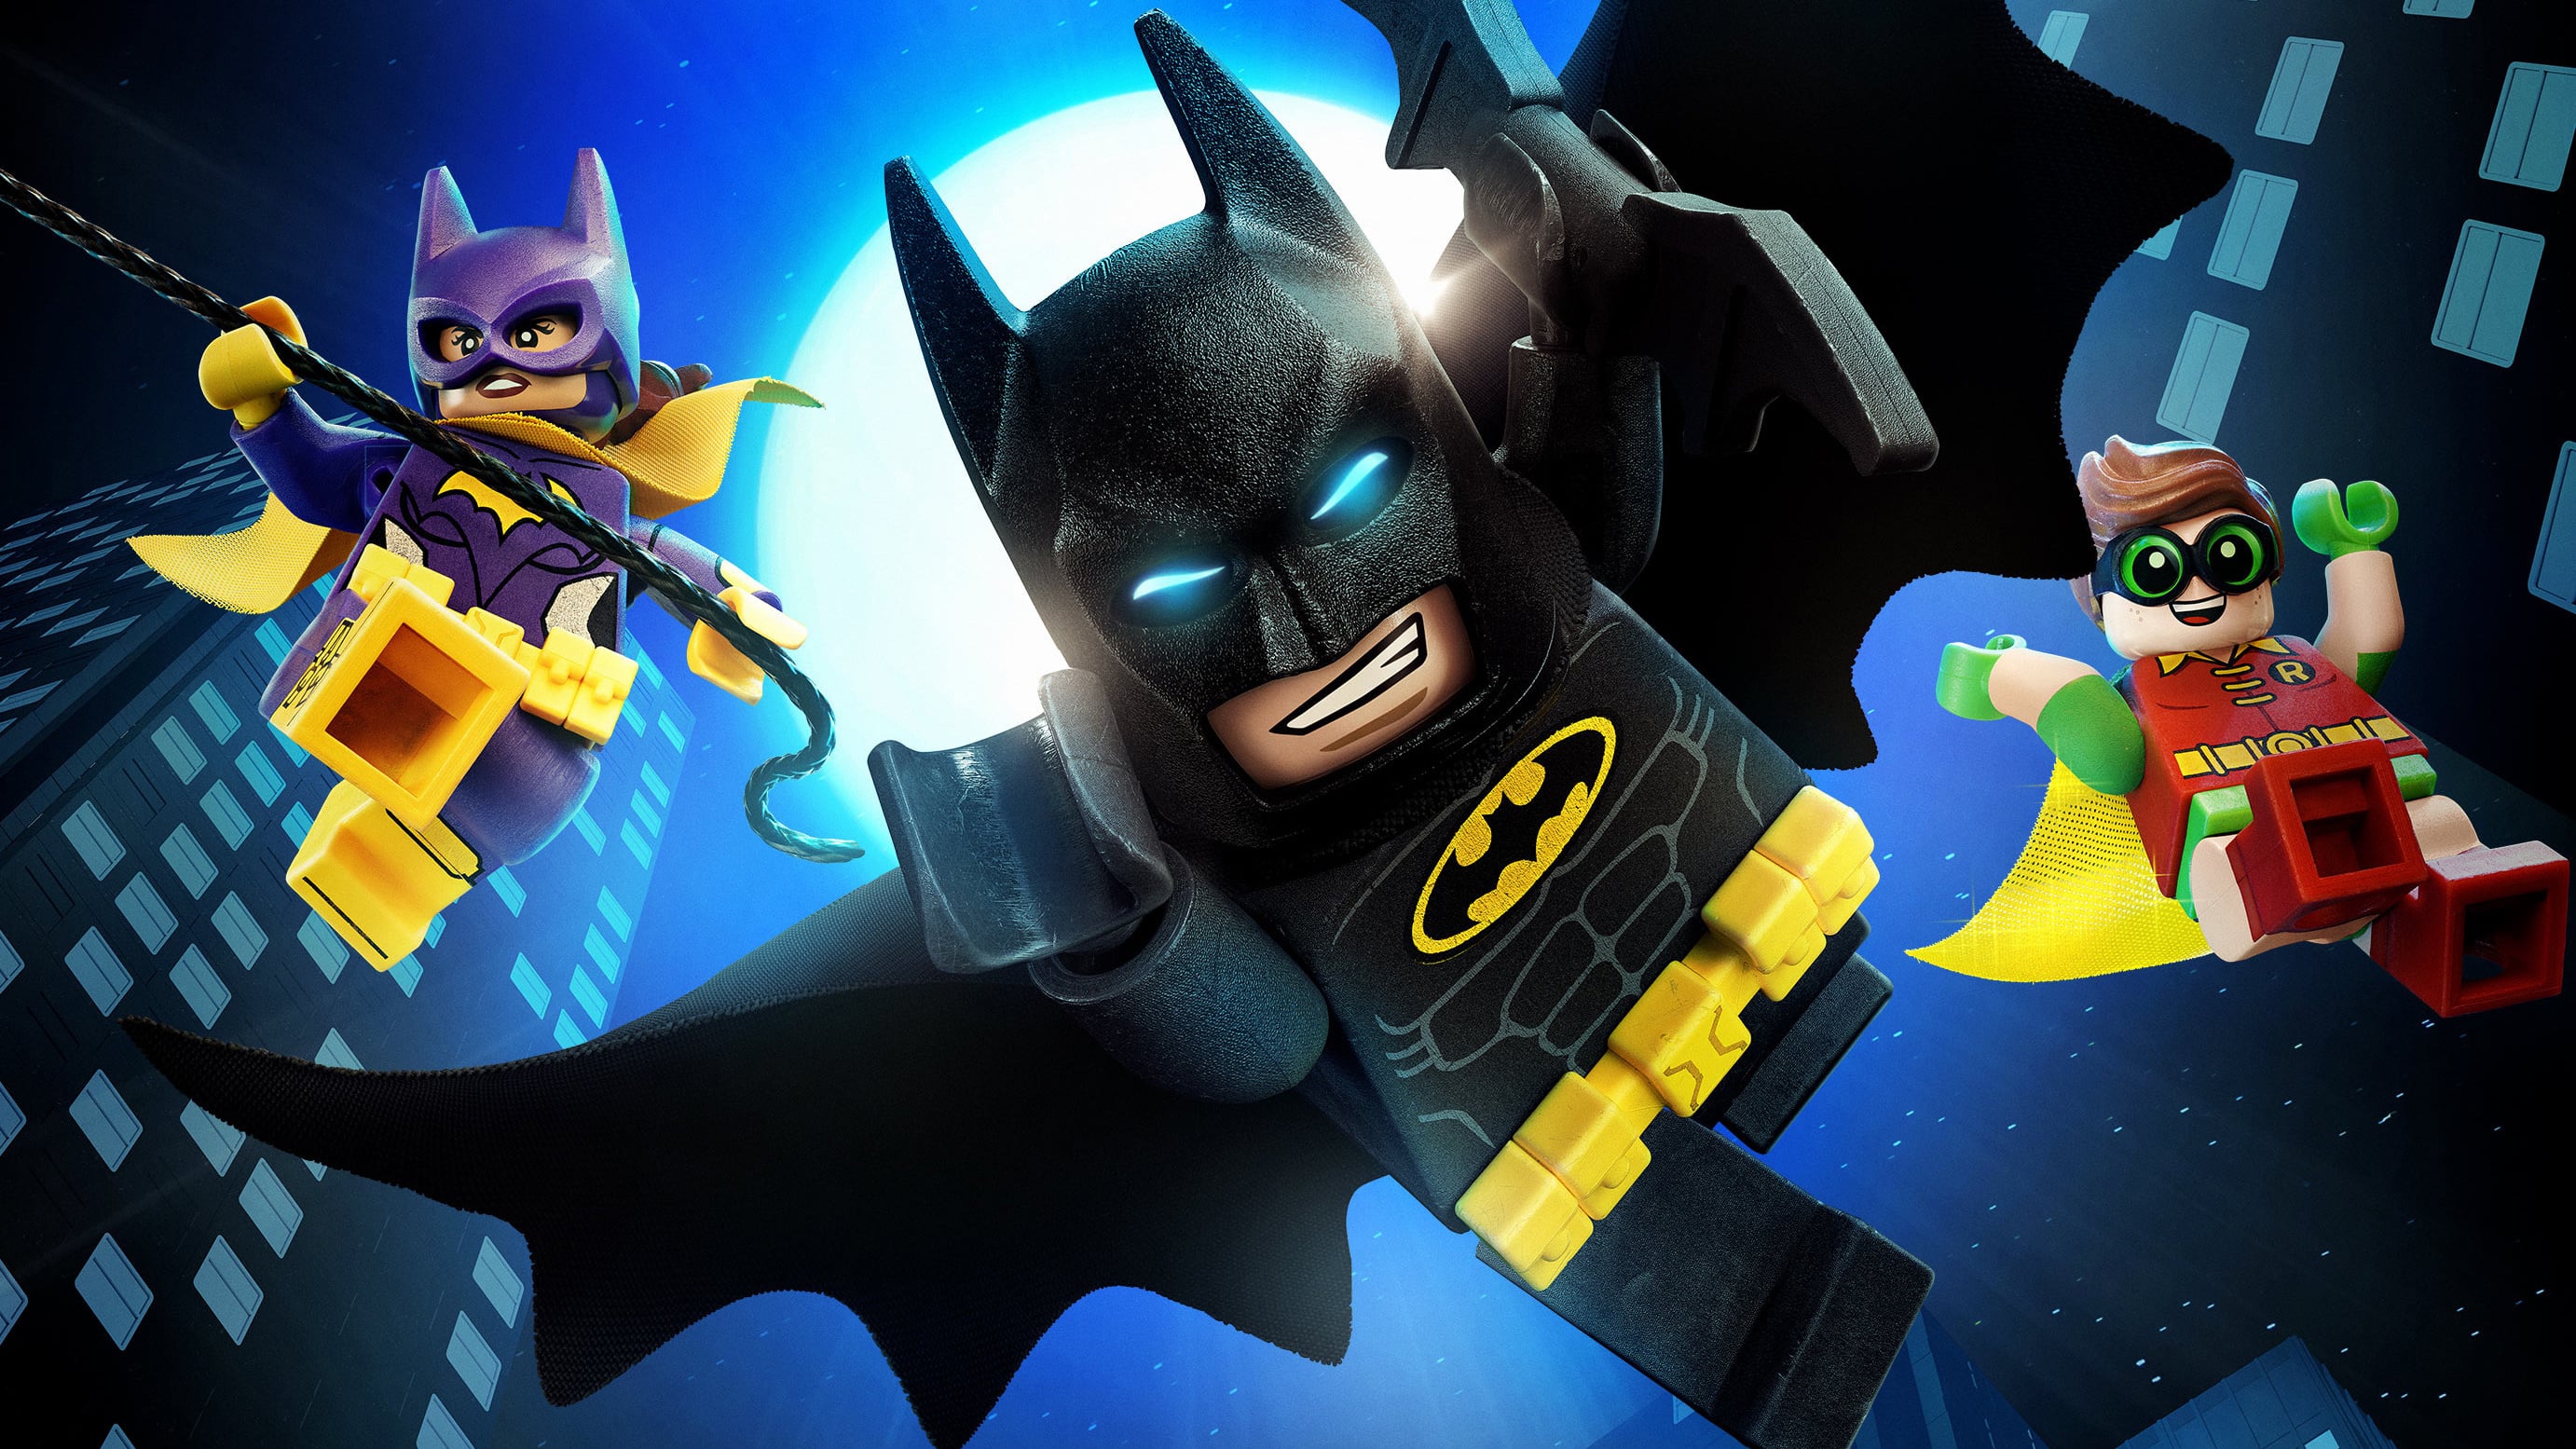 Cine de verano en el auditorio Pilar García Peña: Lego Batman, la película